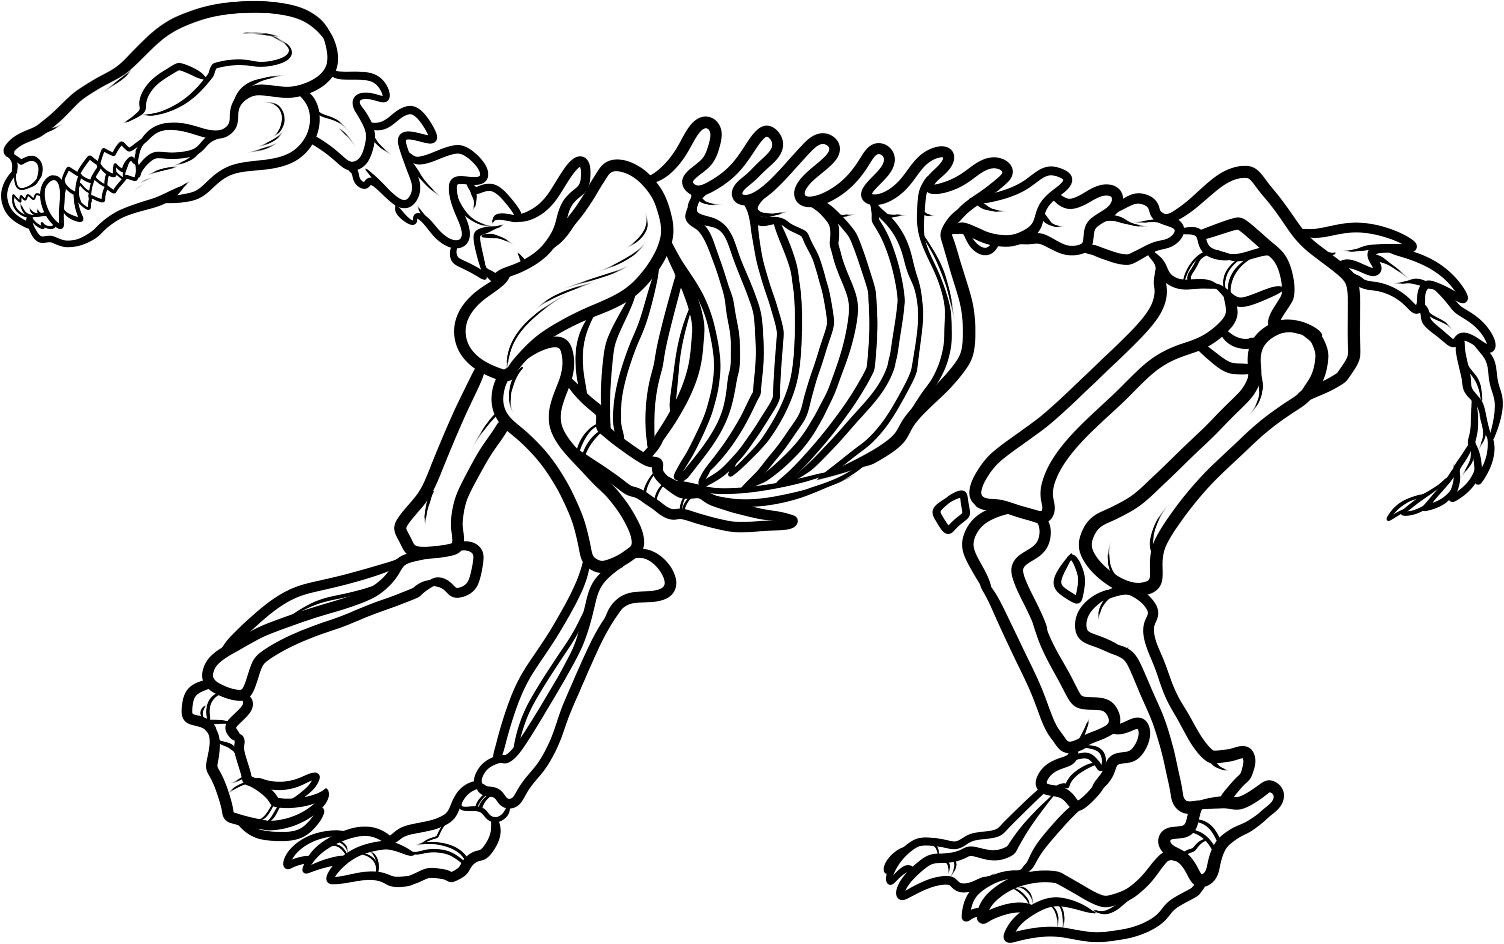 Bones clipart triceratops, Bones triceratops Transparent